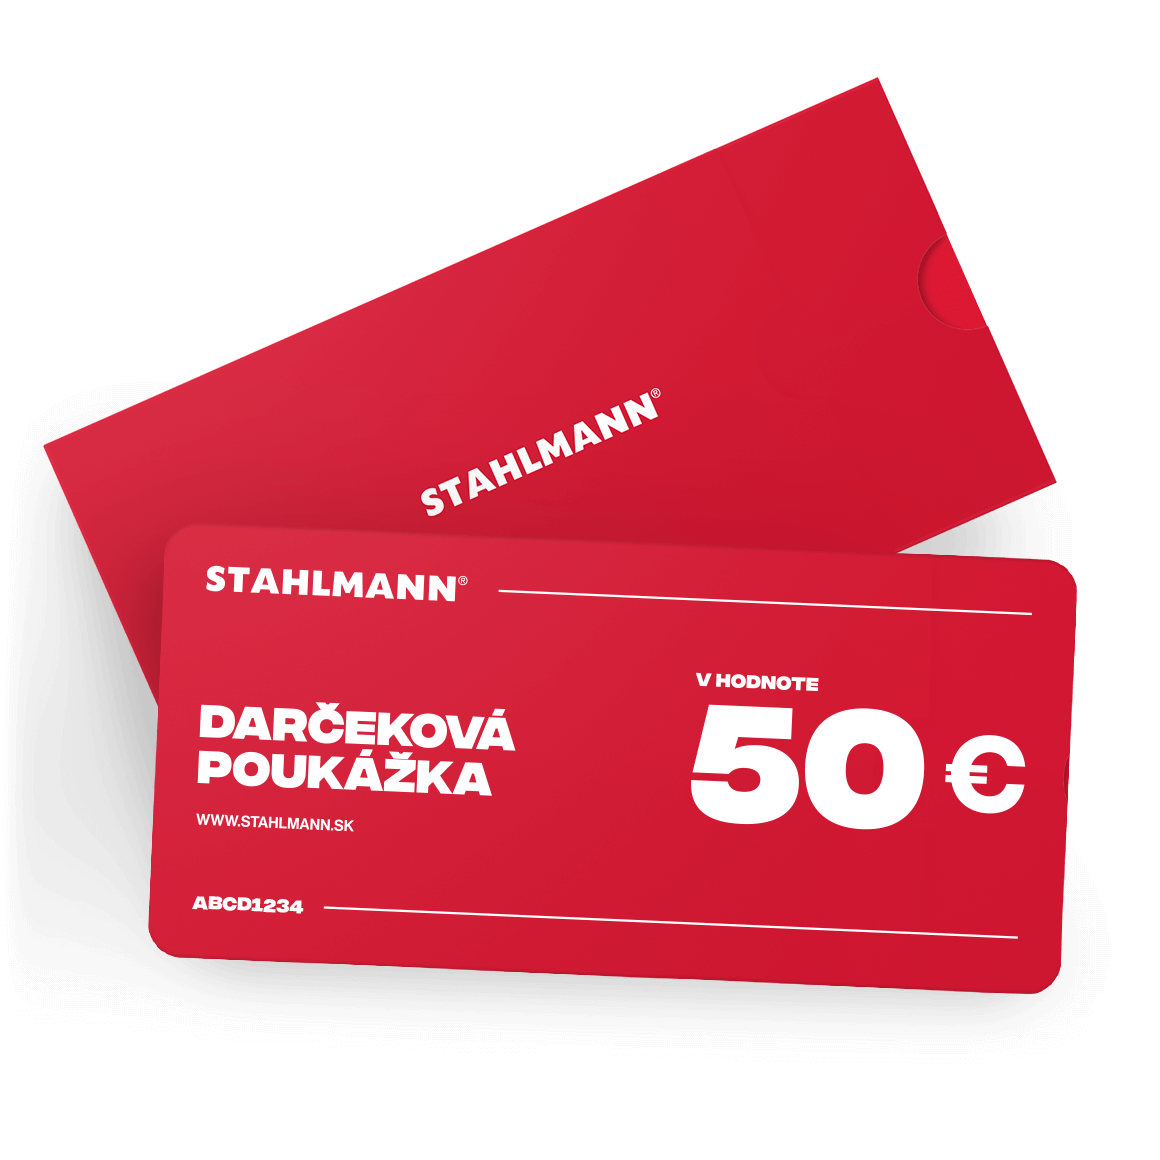 E-shop STAHLMANN 50€ Darčeková poukážka VOUCHER 50€